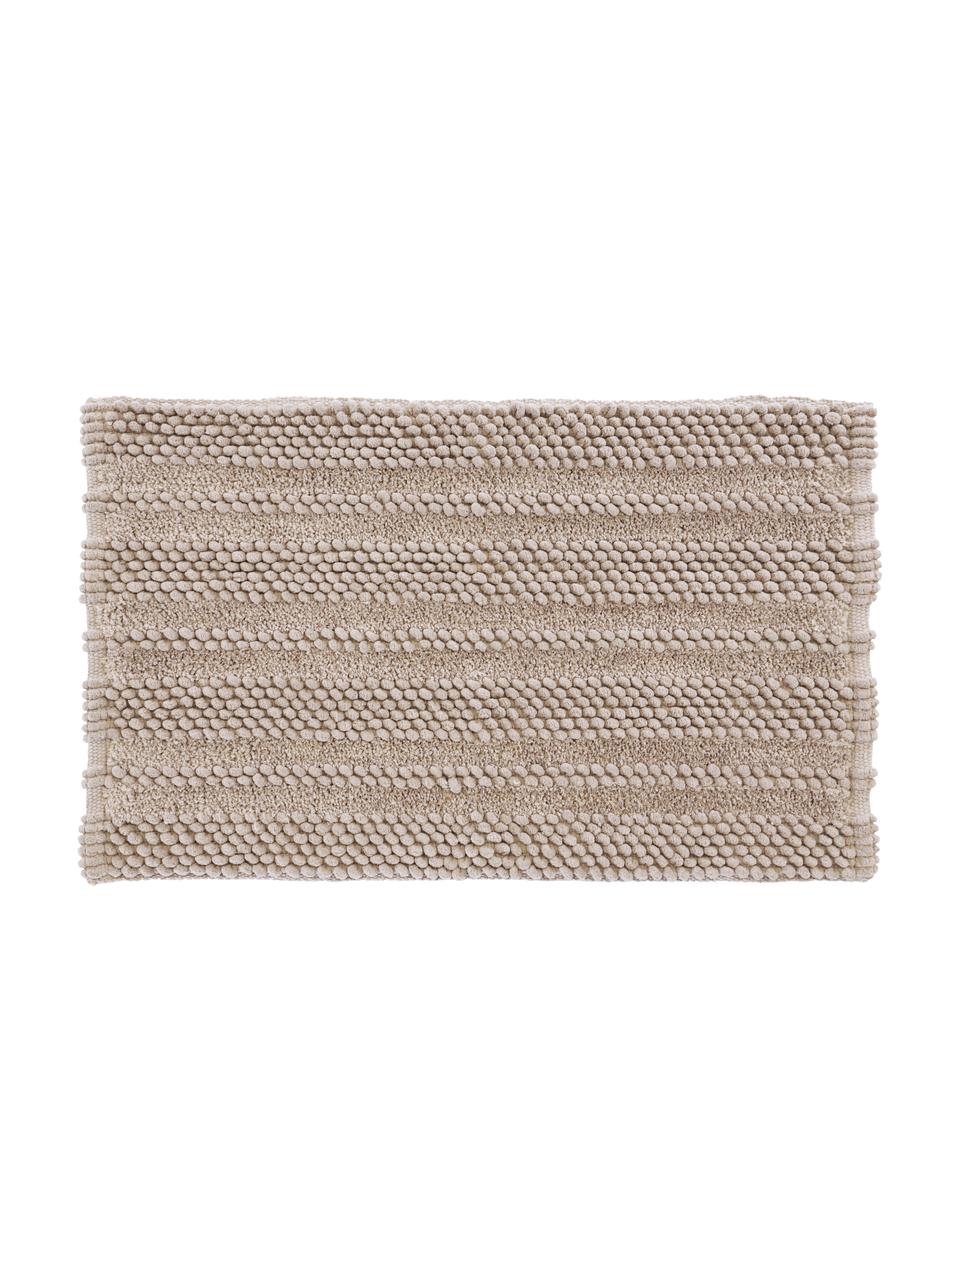 Dywanik łazienkowy z wypukłym wzorem Nea, 65% poliester, 35% bawełna, Odcienie piaskowego, S 50 x D 80 cm